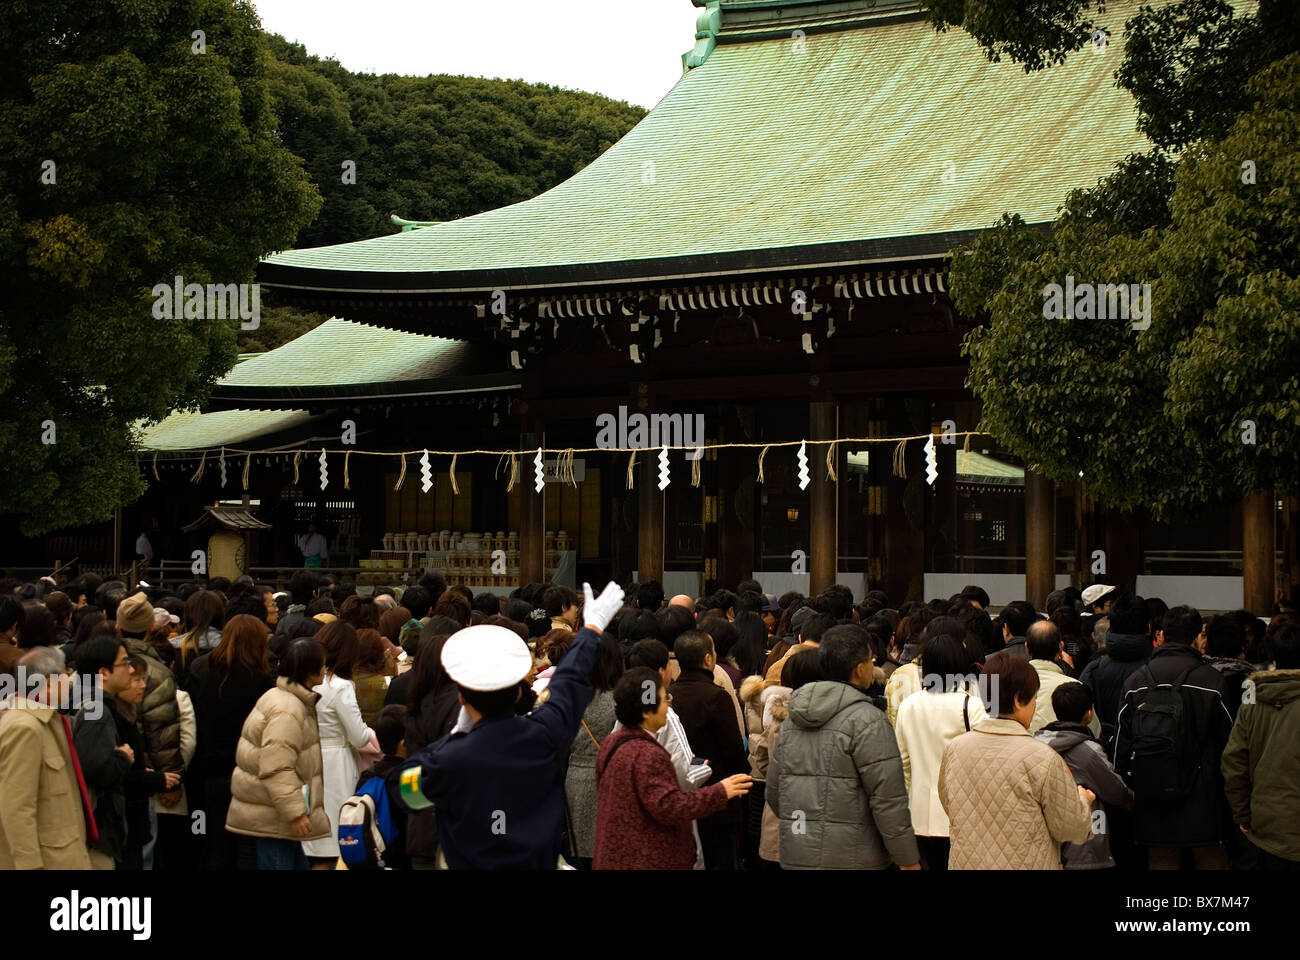 Di fronte alla folla meiji jingu dà il benvenuto al nuovo anno durante le celebrazioni shogatsu, Tokyo, Giappone Foto Stock